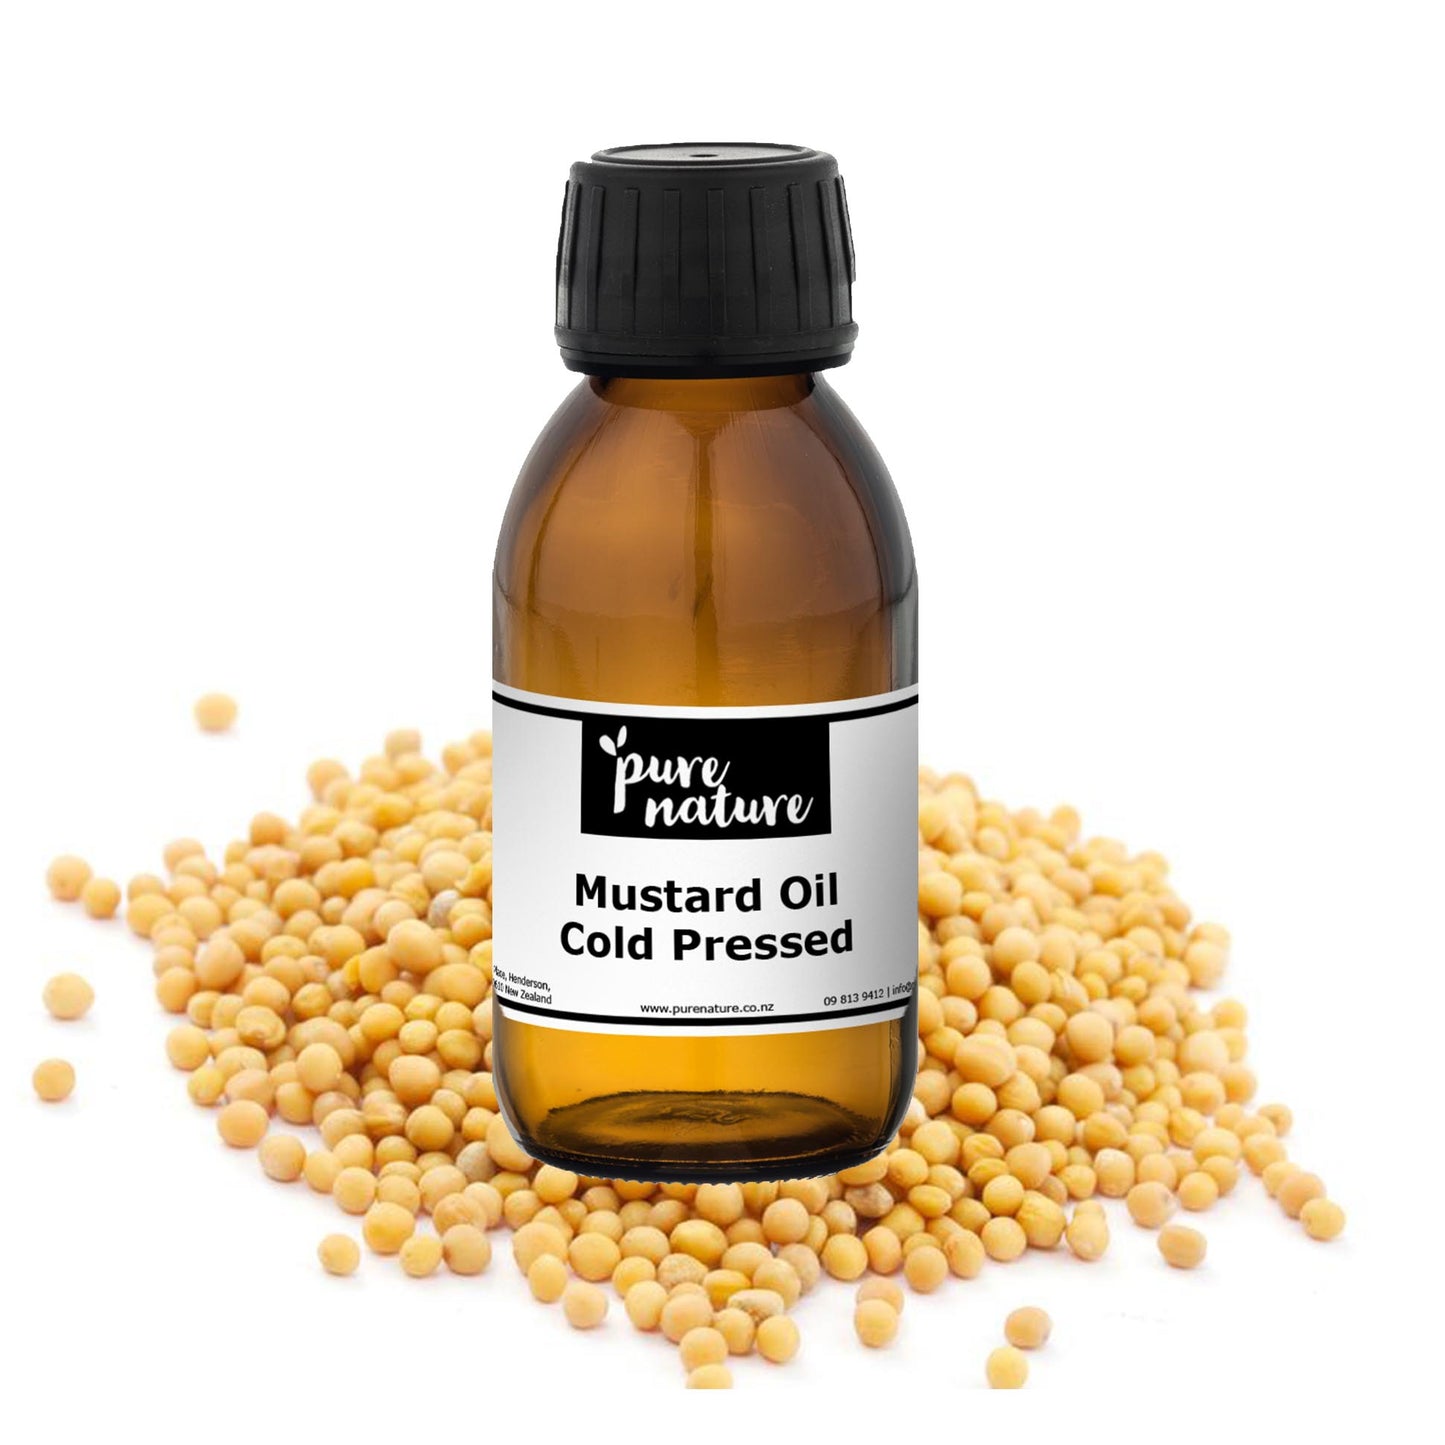 Mustard Oil, Cold Pressed